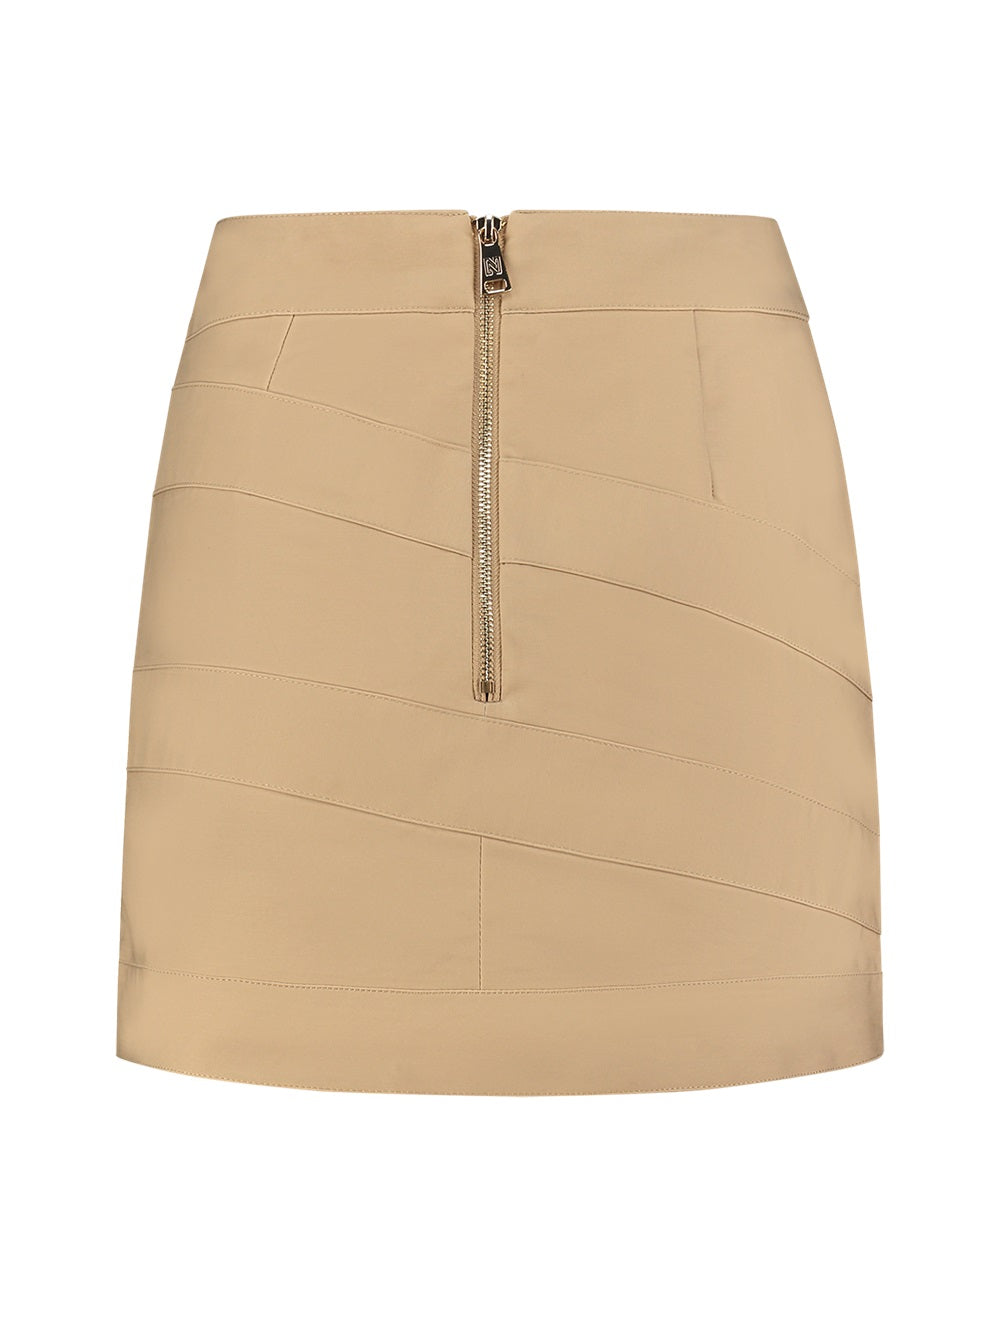 Skirt brooklyn N-3-742-2402 Cashew